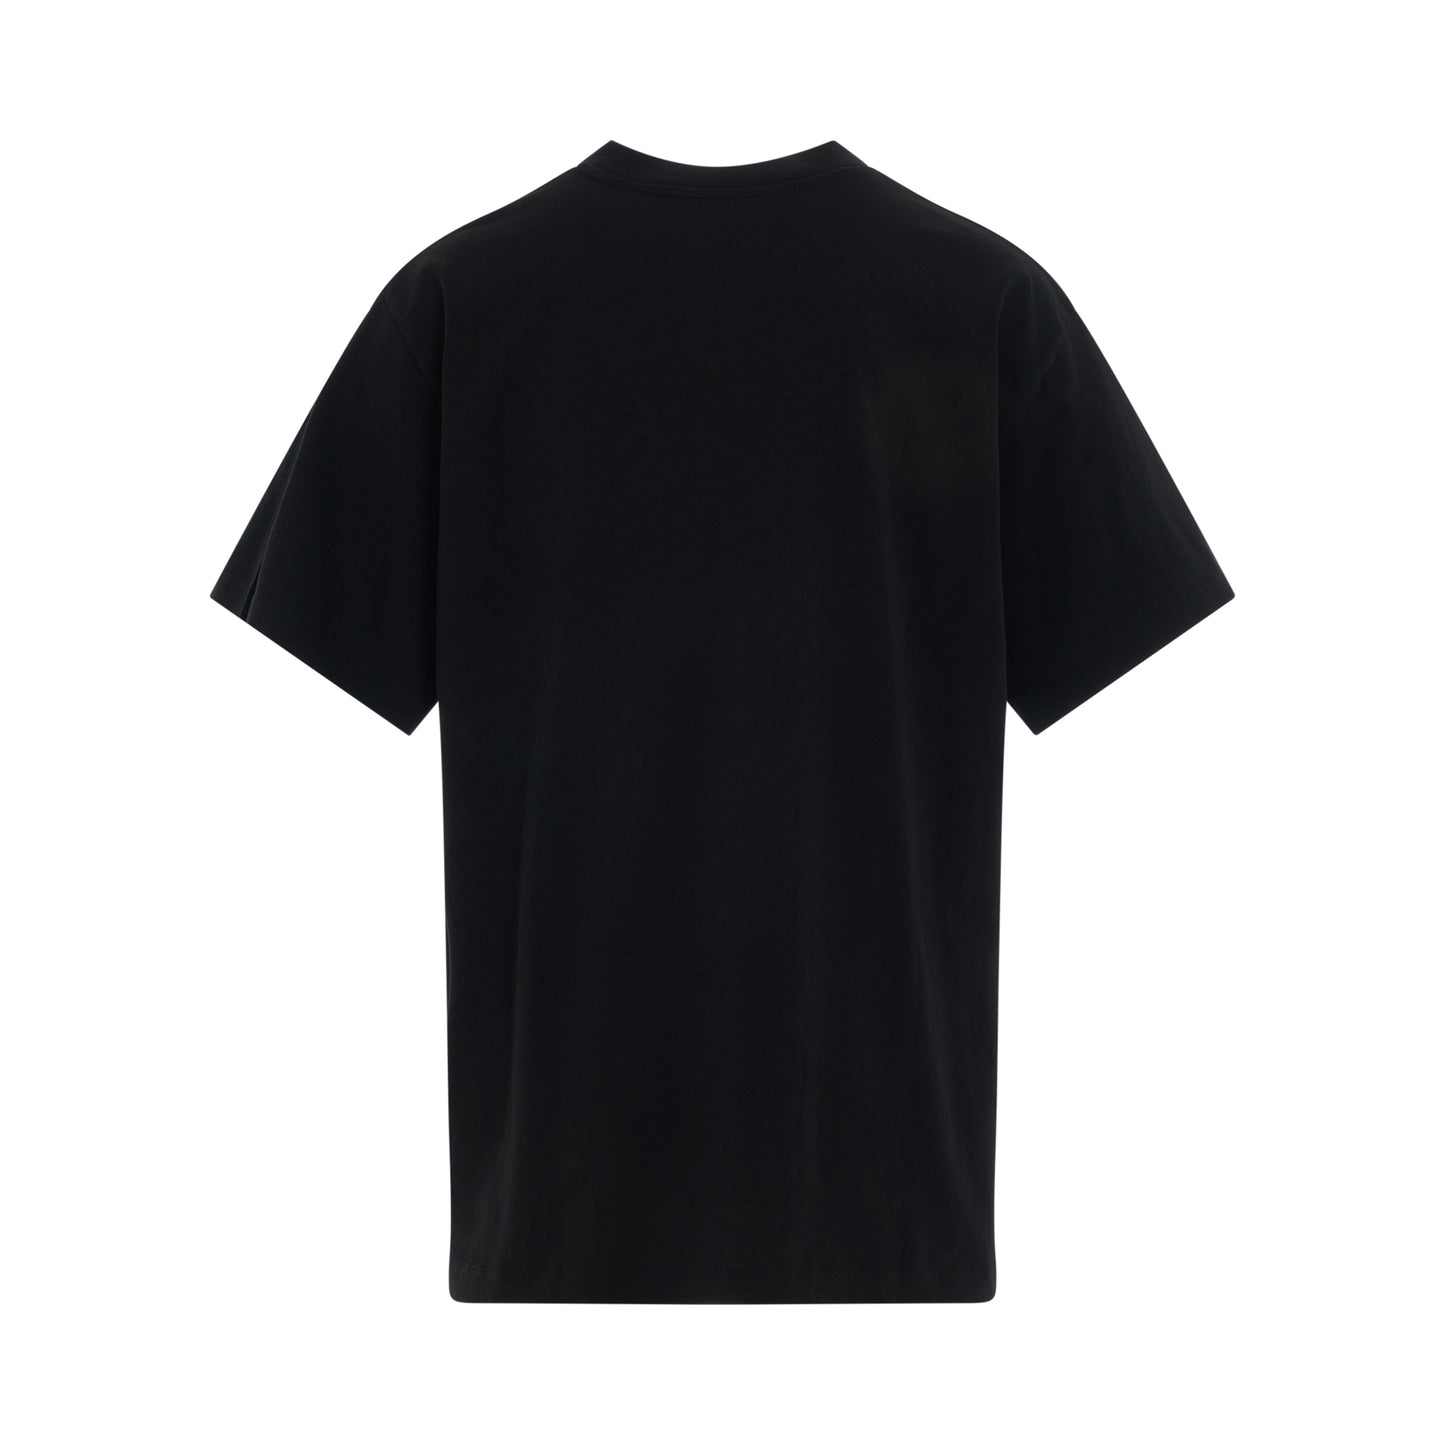 Spiral Opposite T-Shirt in Black/White